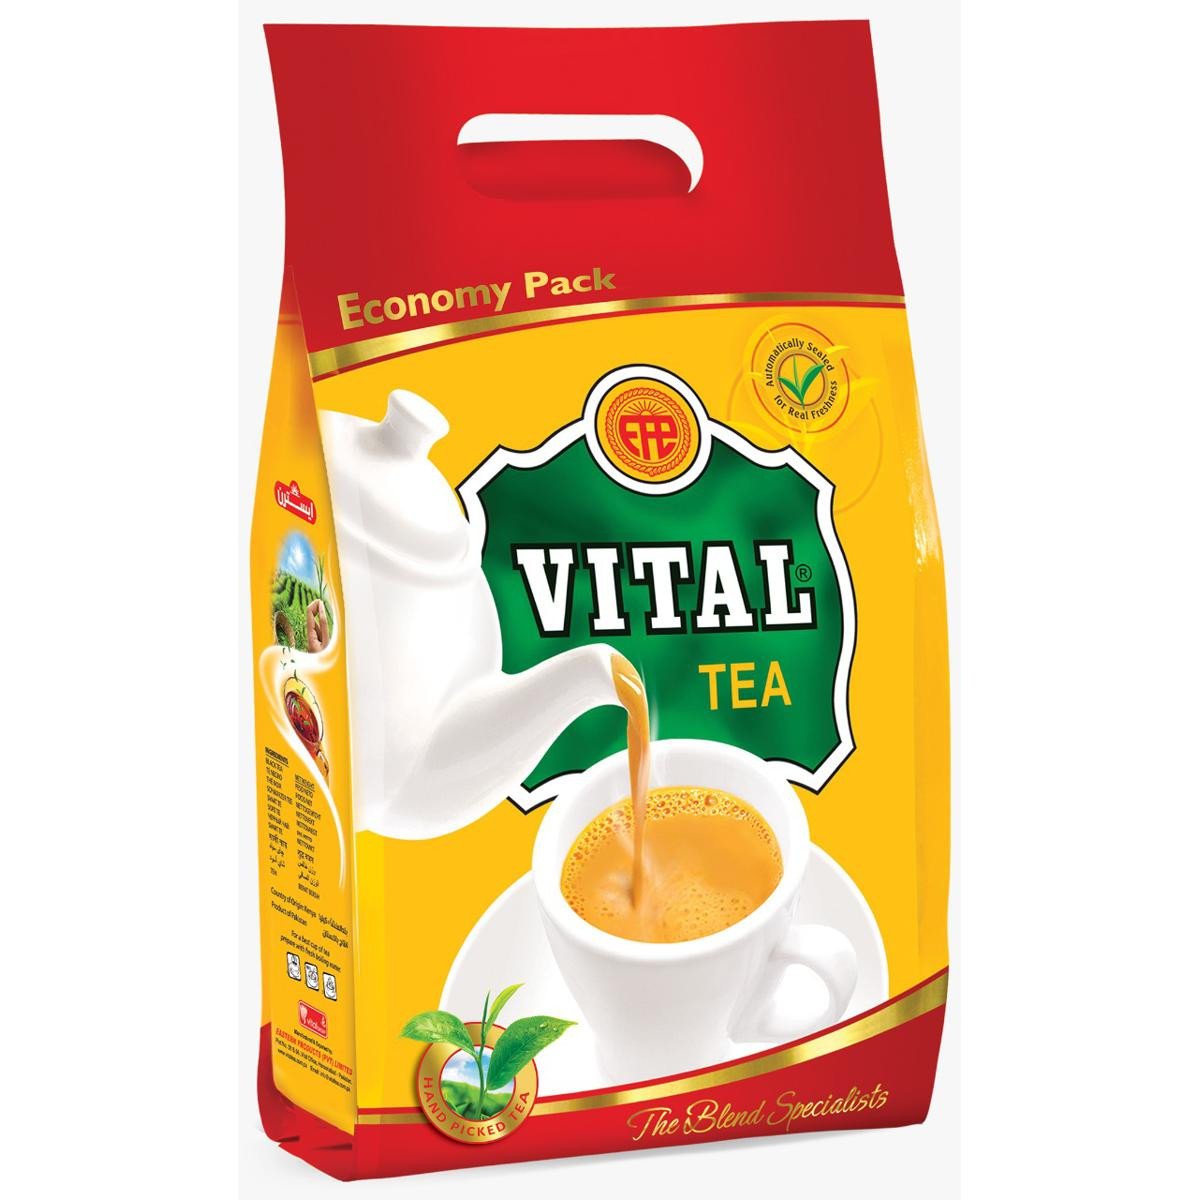 Vital black tea 350g Pouch